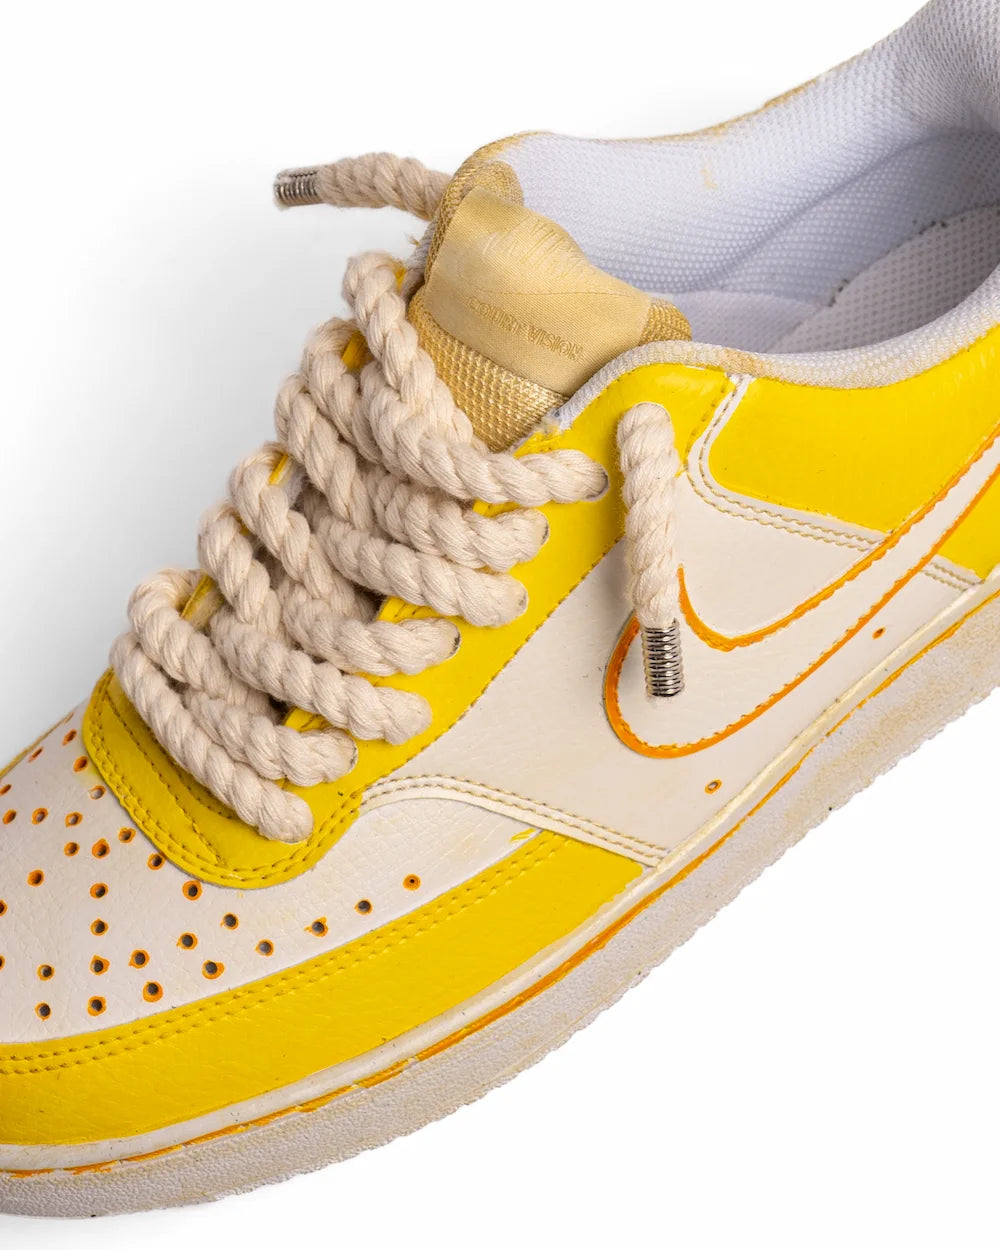 Nike Court Vision custom modello 5 Points Yellow, dipinta a mano in due tonalità di giallo, con lacci in corda beige